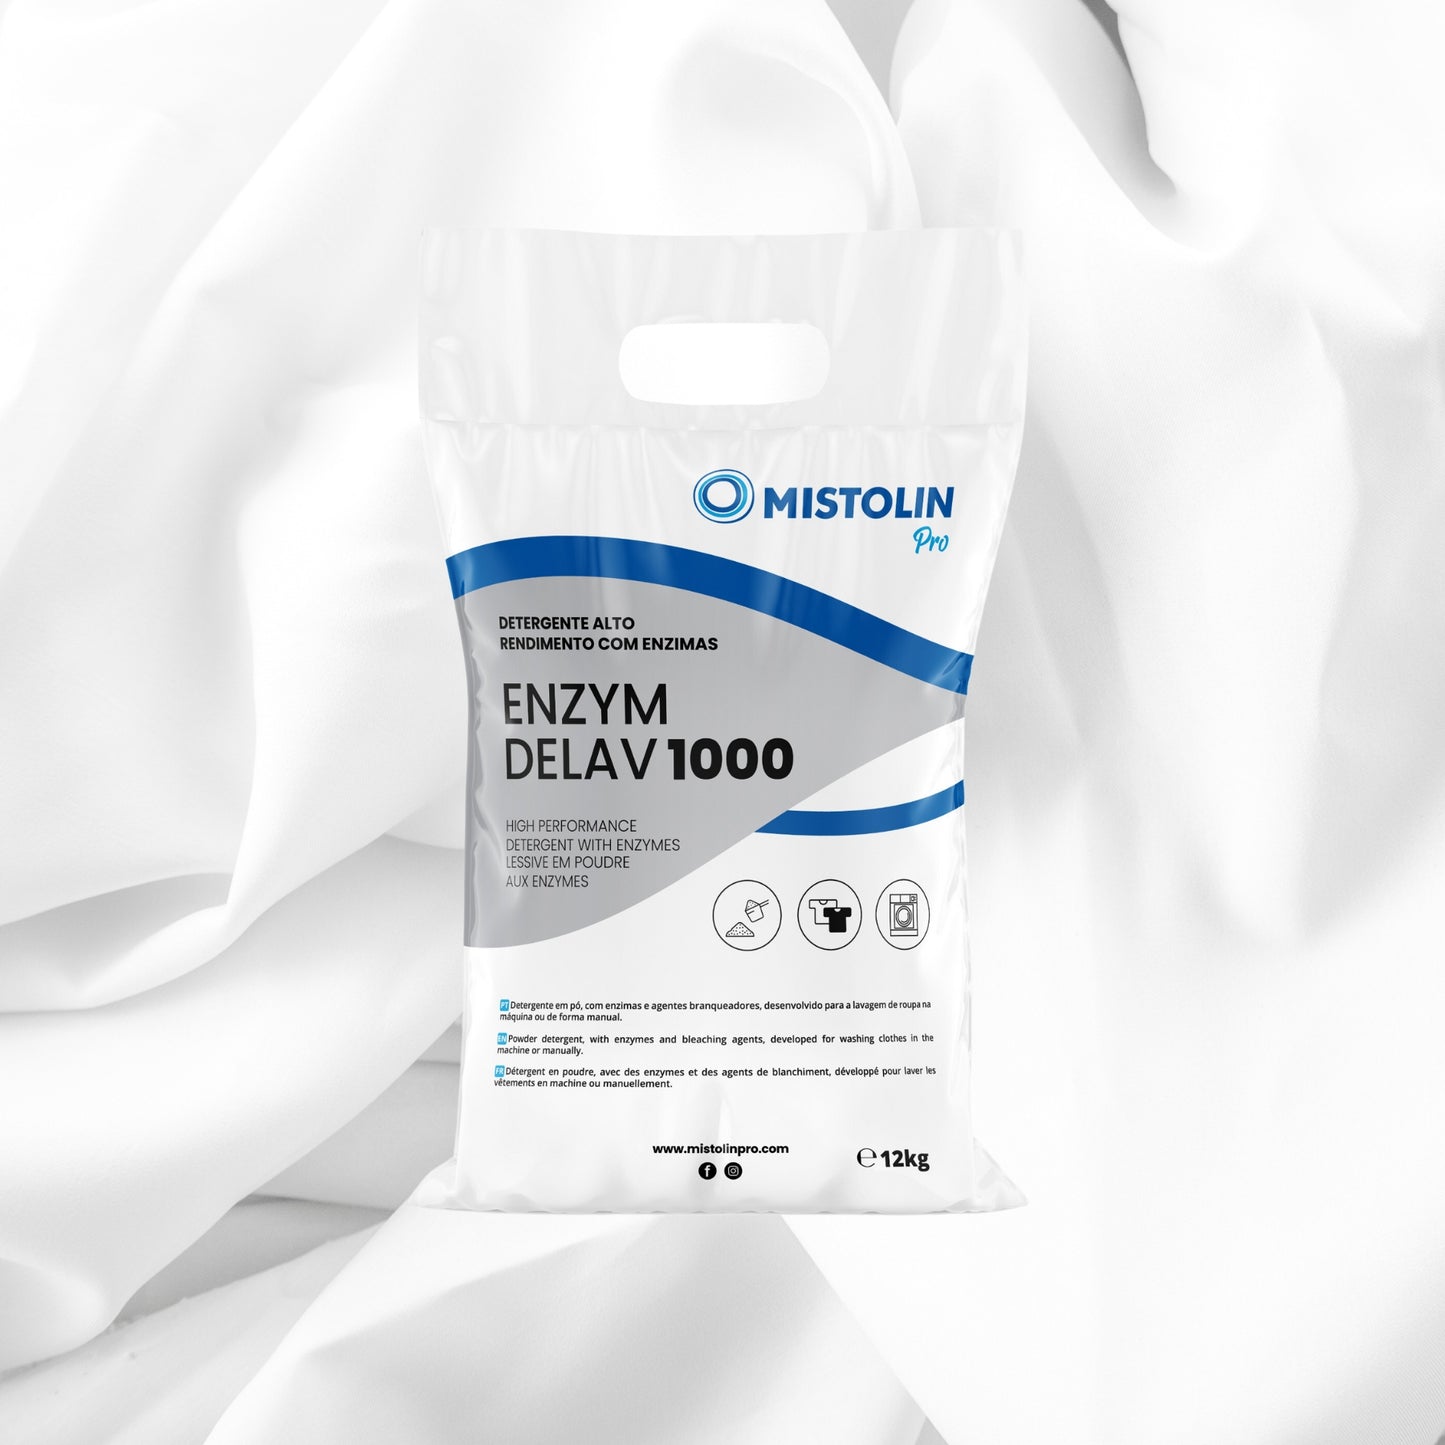 ENZYM DELAV-1000 DETERGENTE PO ENZIMAS [12KG], é um detergente em pó, atomizado, com enzimas e agentes branqueadores, especialmente desenvolvido para a lavagem de roupa à máquina.